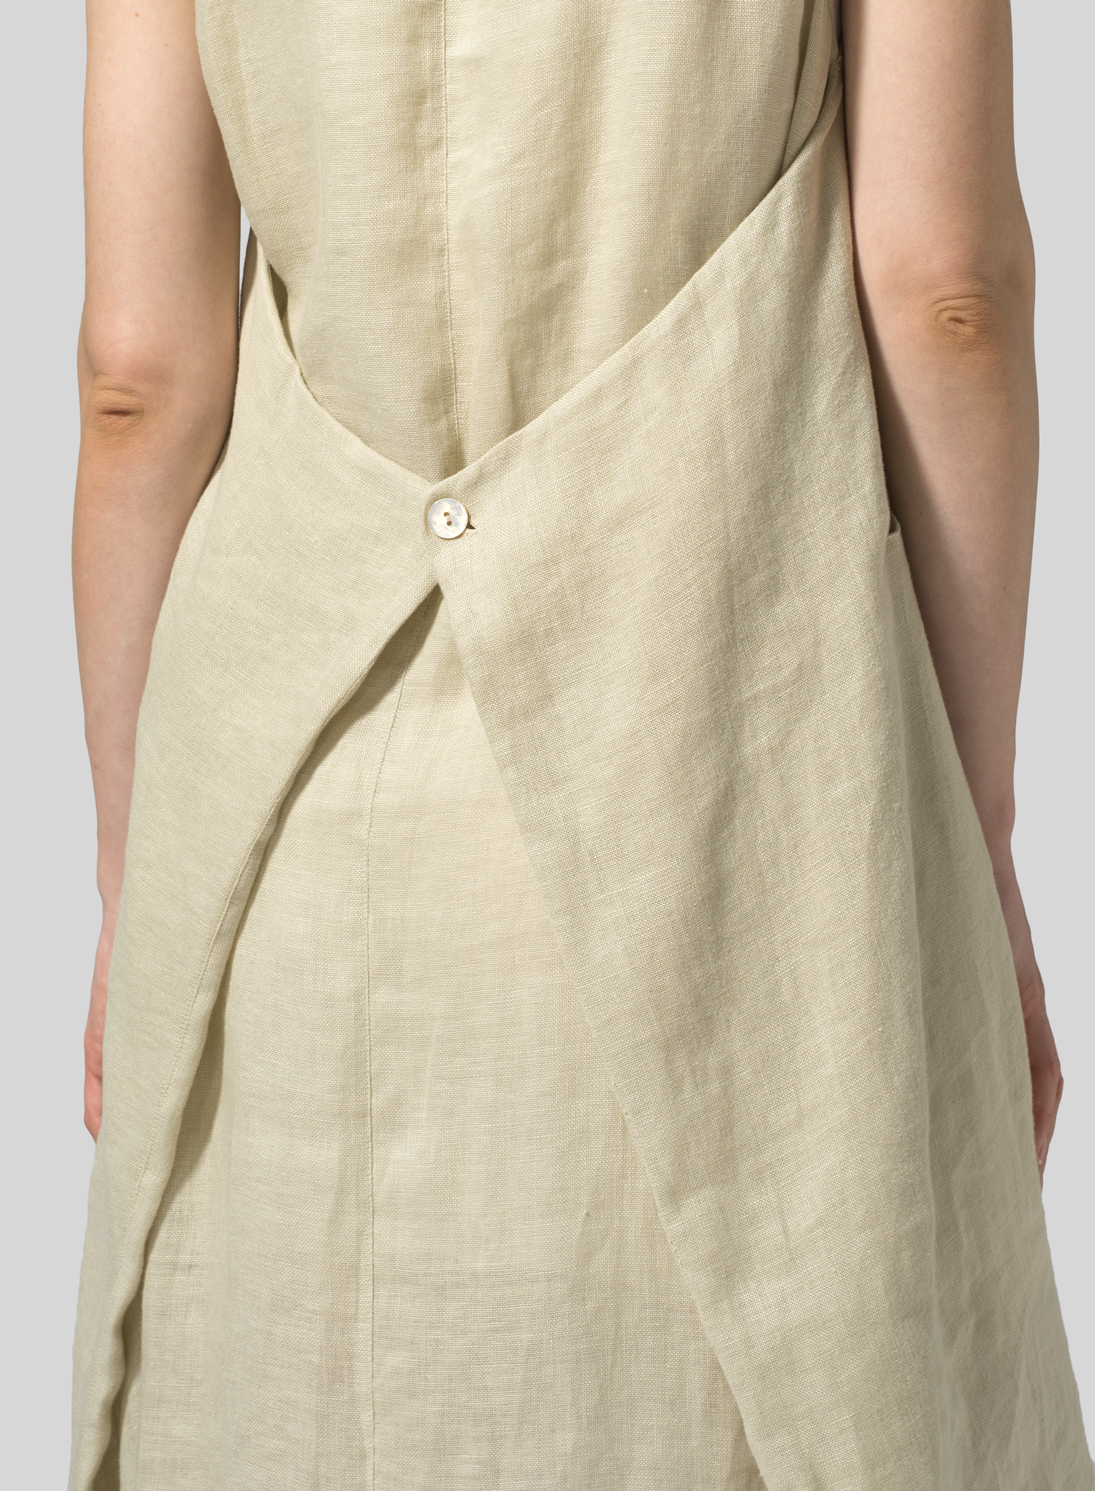 Lightweight Linen Sleeveless Long Dress - Plus Size